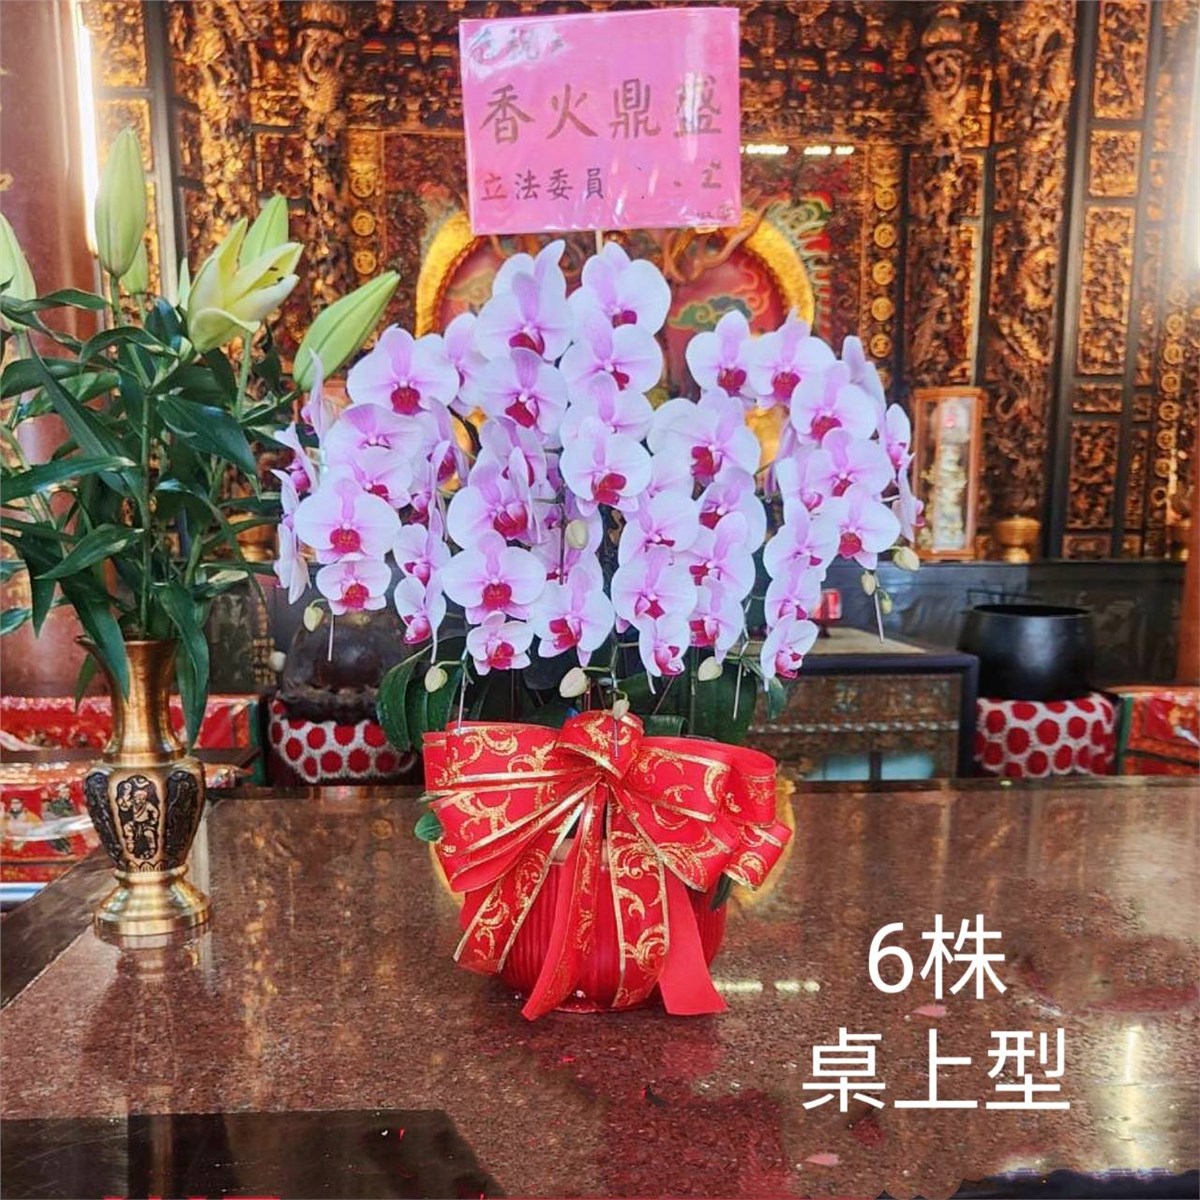 6株桌上型蘭花(粉色)